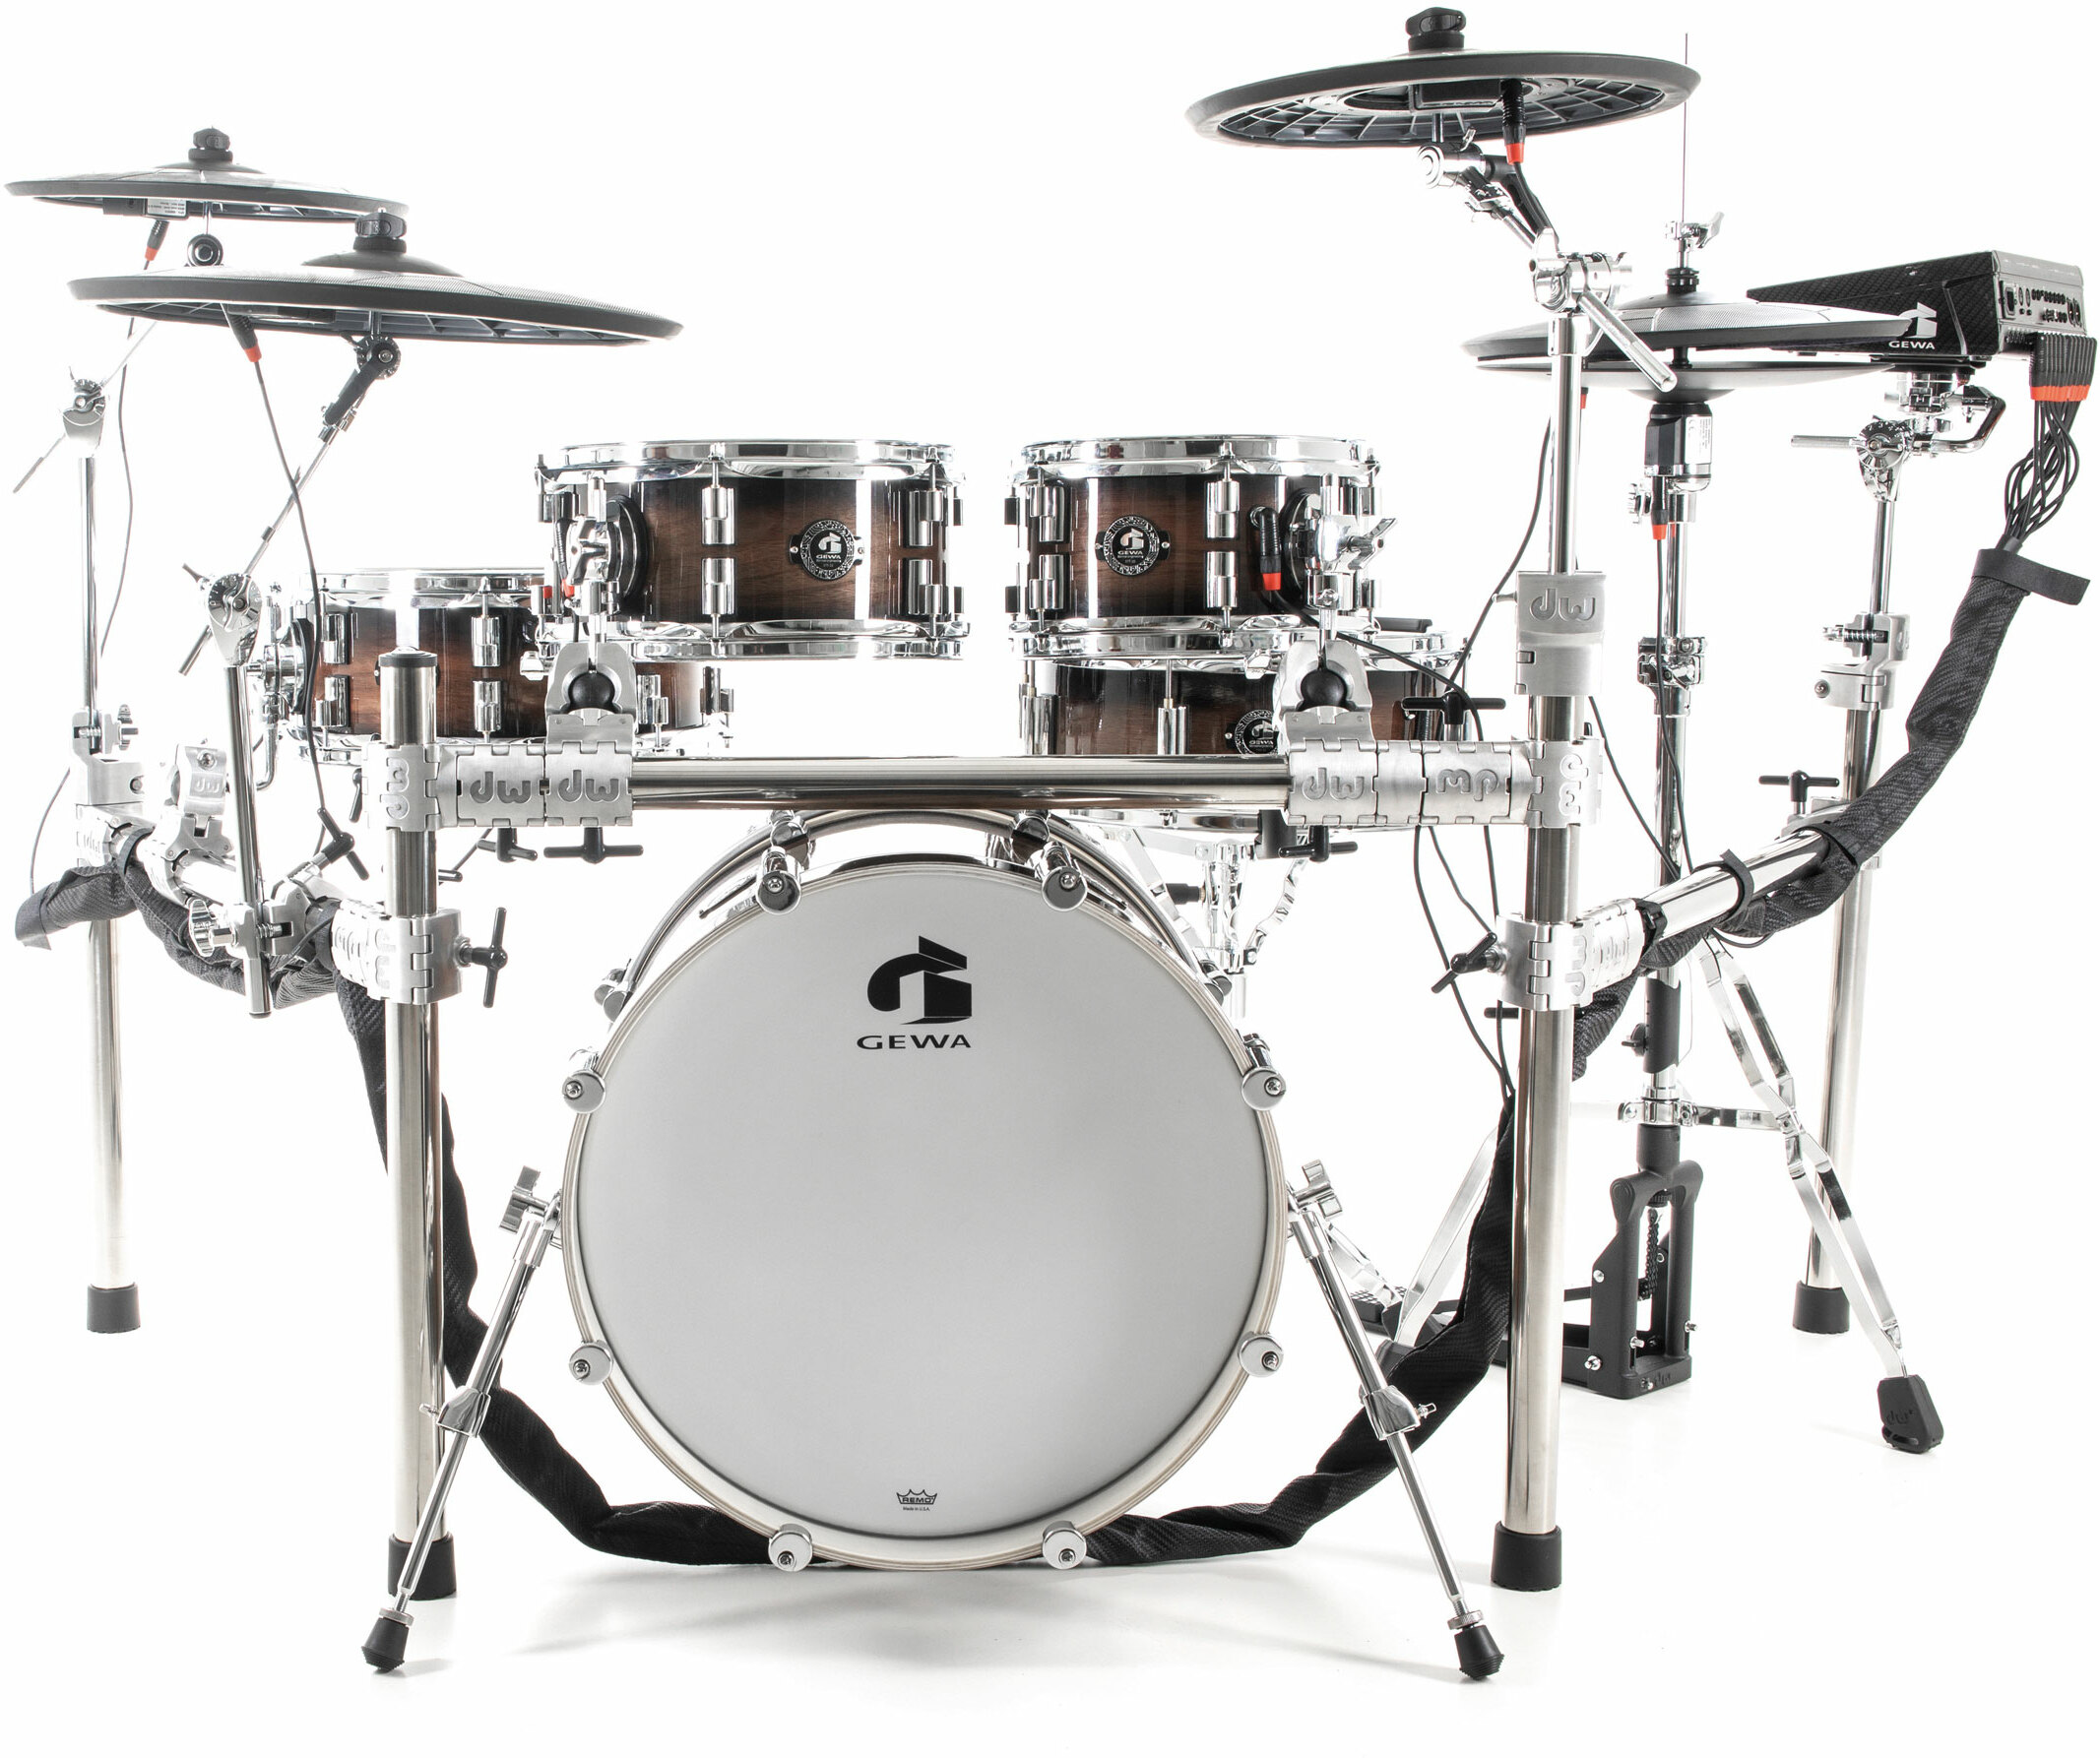 Gewa G9 E-drum Kit Pro L5 Walnut Burst - Electronic drum kit & set - Main picture